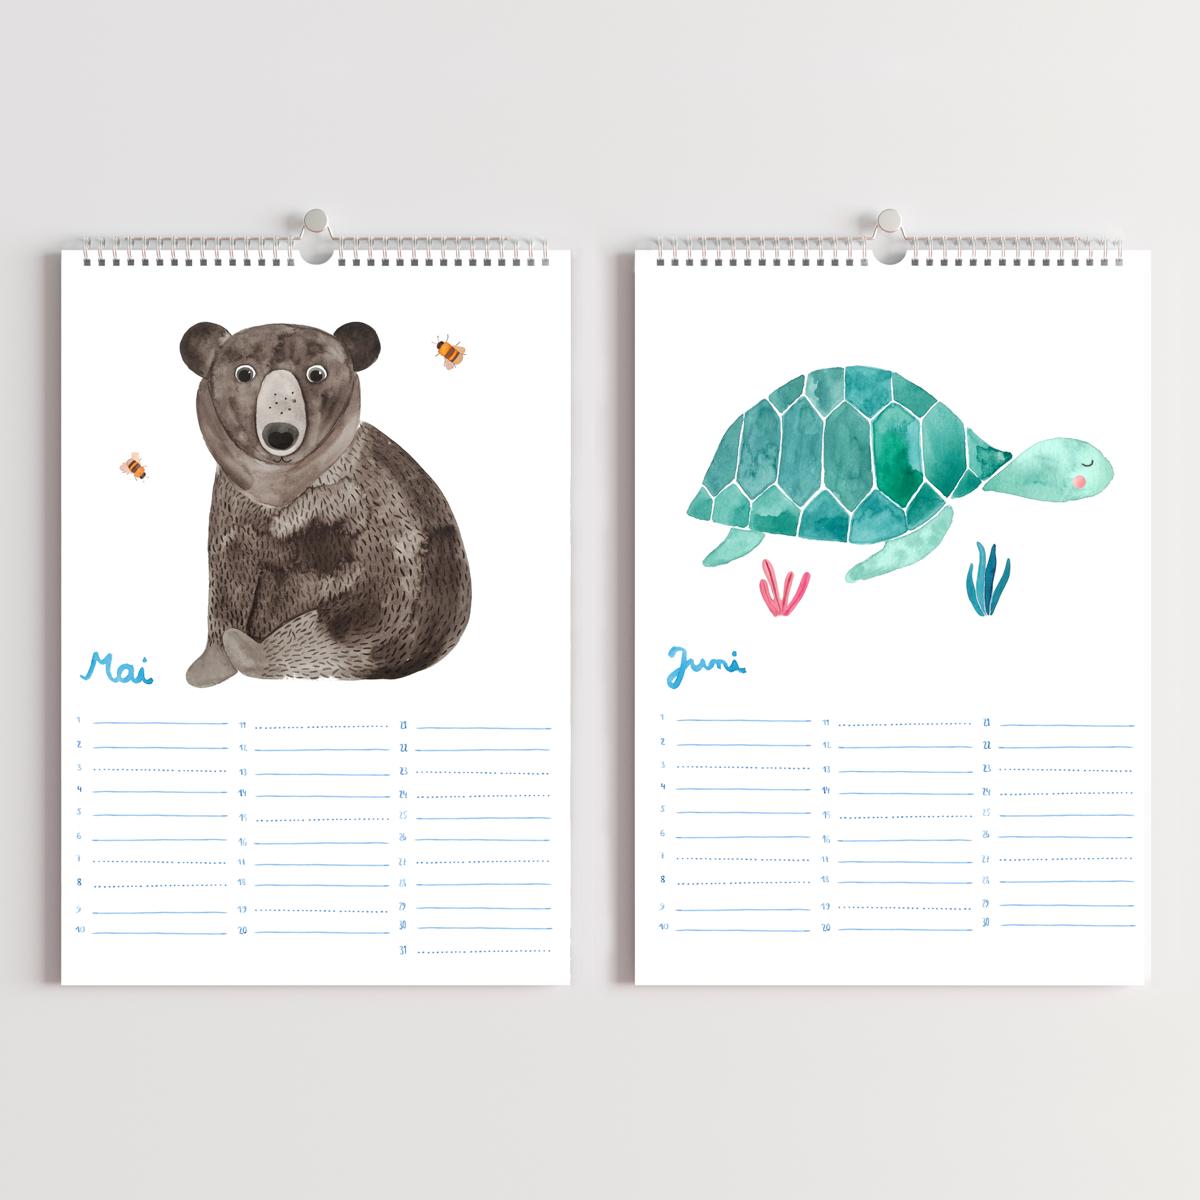 Geburtstagskalender *Kalendarium der Tiere* (A4) Edition "Dschungel"